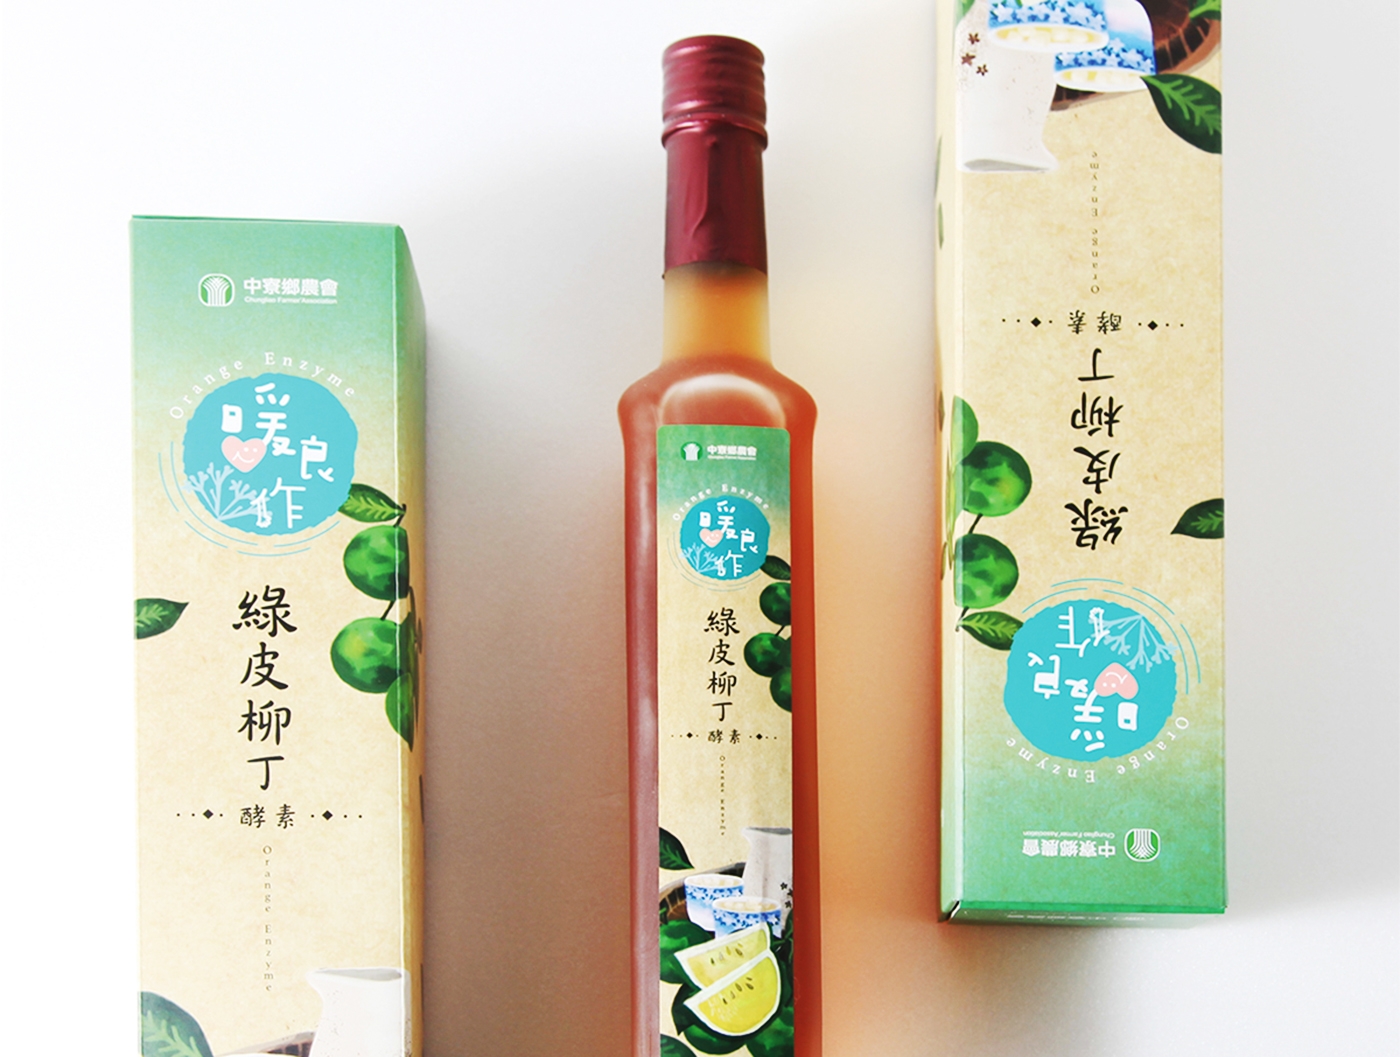 台湾果醋酵母素瓶型标签包装设计